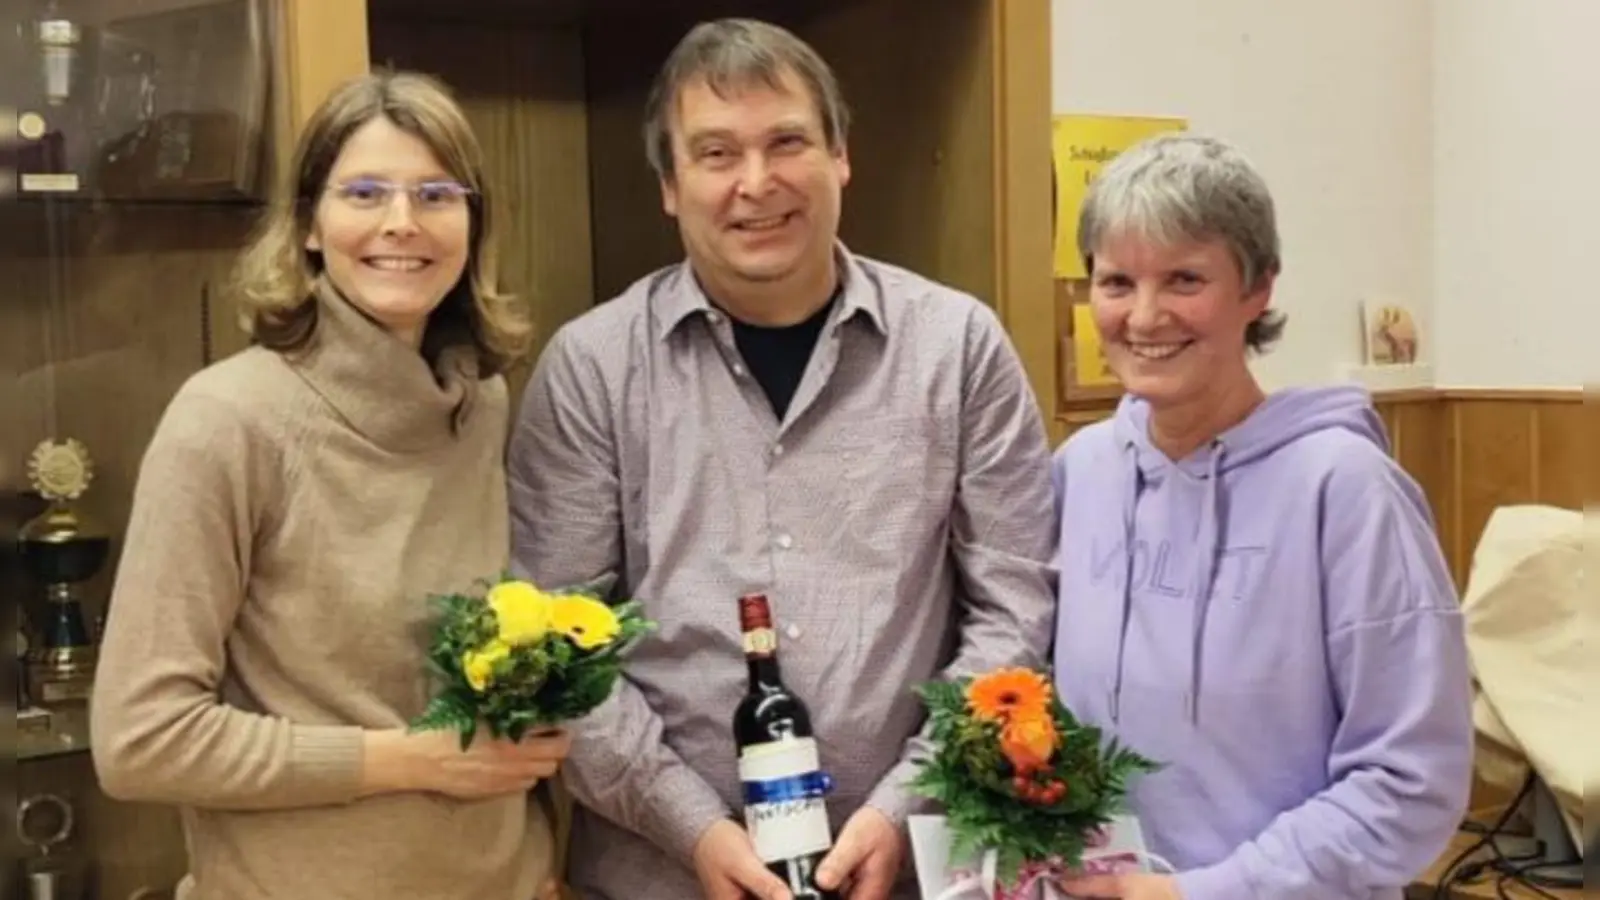 Mit Blumen und Präsenten für langjährige Vorstandsarbeit geehrt: Christiane Eggelmann, Michael Horstmeier und Cora Horstmeier. (Foto: privat)